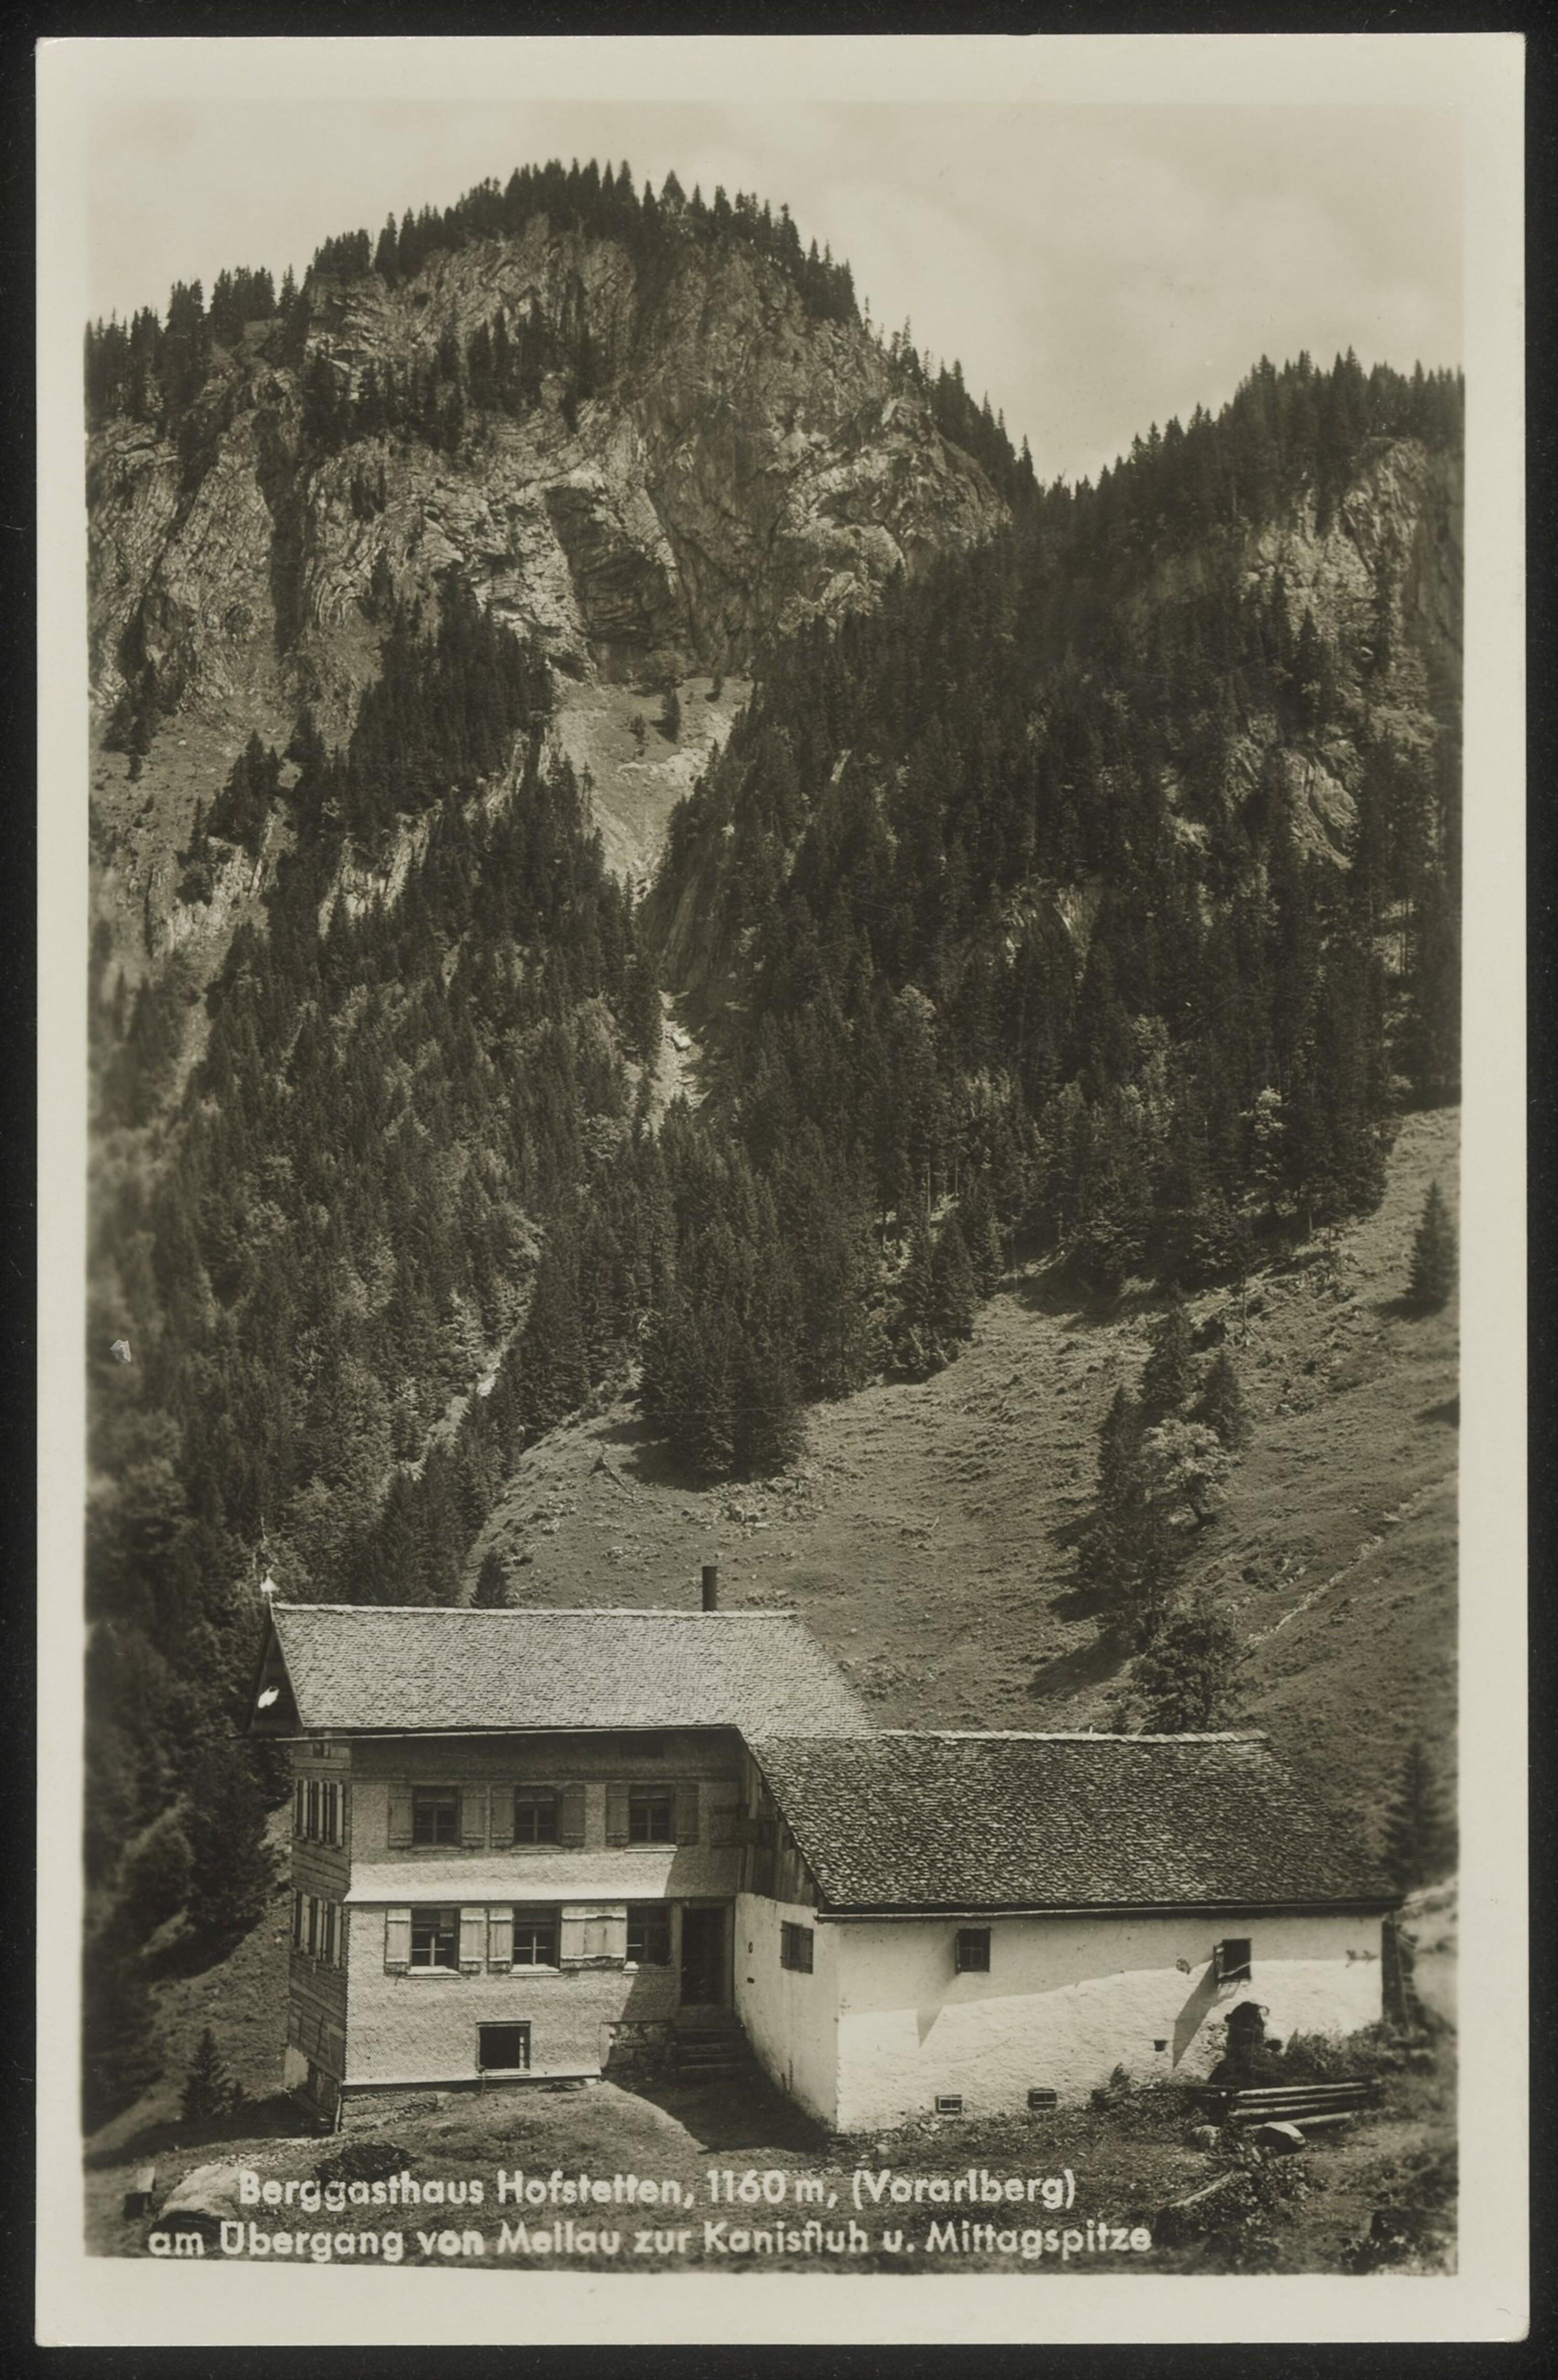 Berggasthaus Hofstetten, 1160 m, (Vorarlberg) am Übergang von Mellau zur Kanisfluh u. Mittagspitze></div>


    <hr>
    <div class=